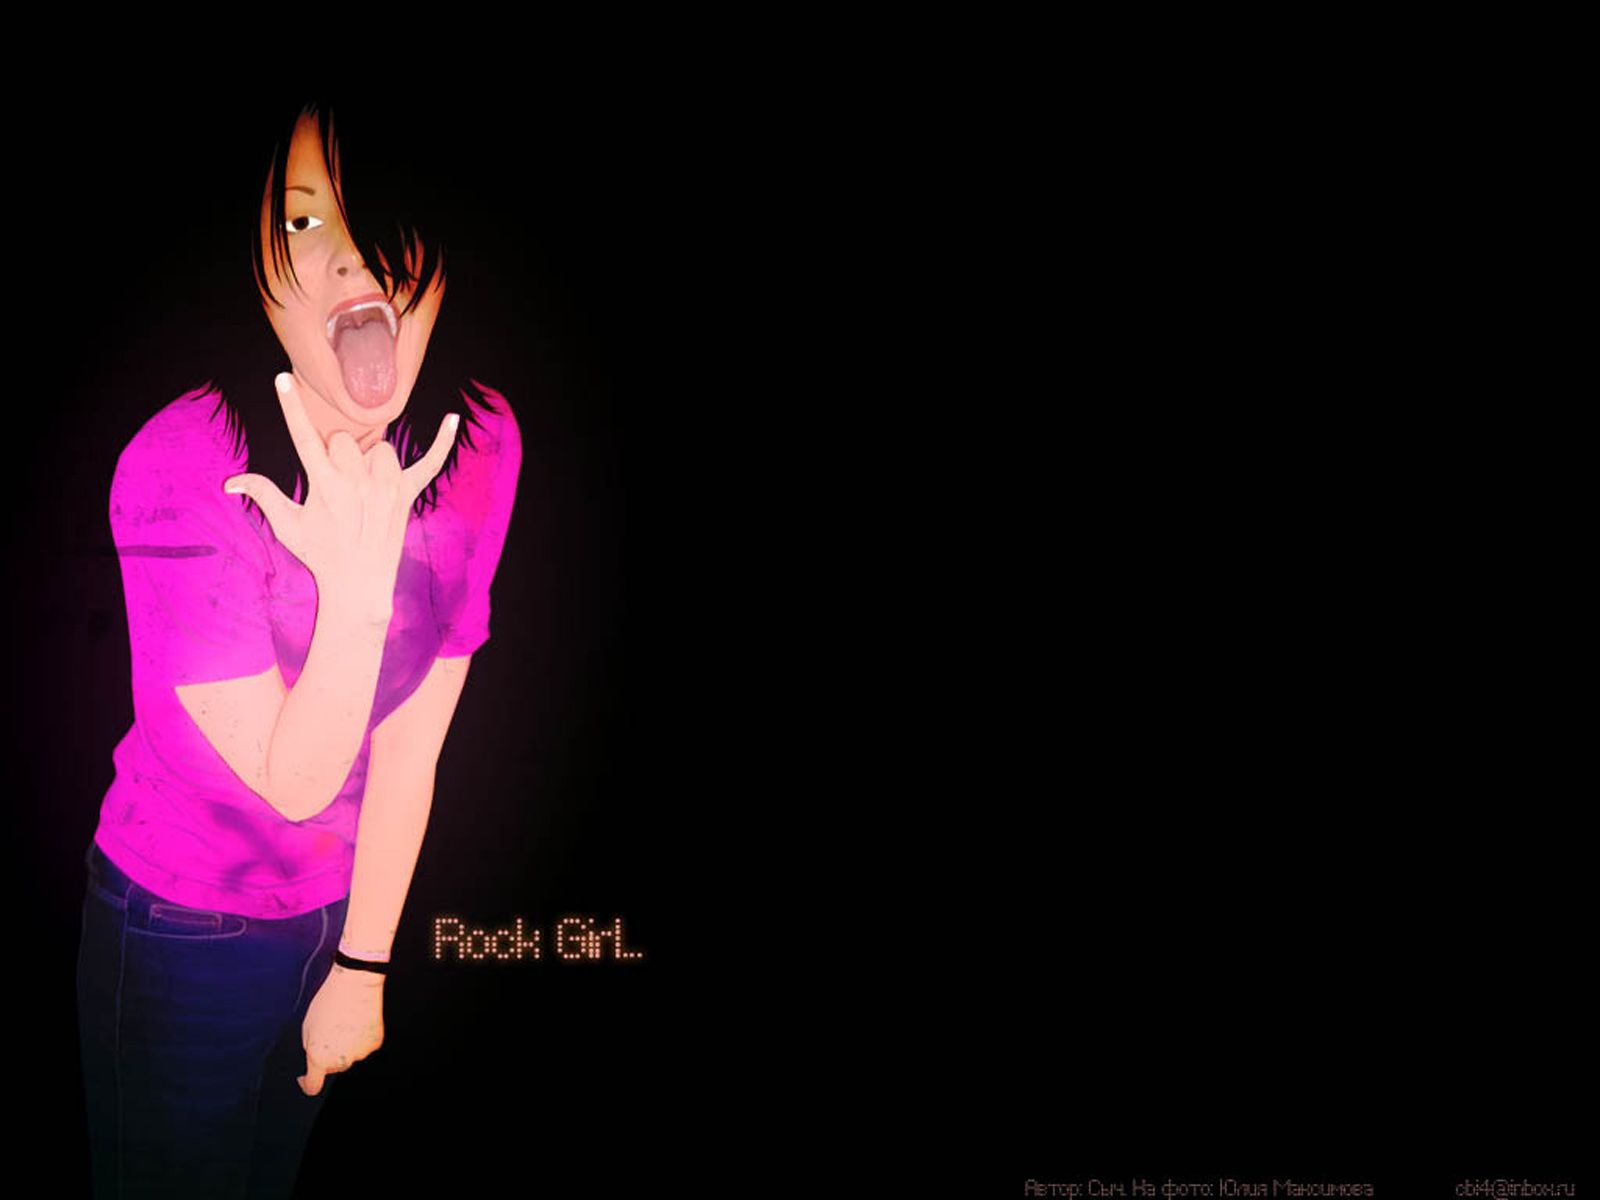 Free download Emo rock girl wallpaper .wallpaperafari.com